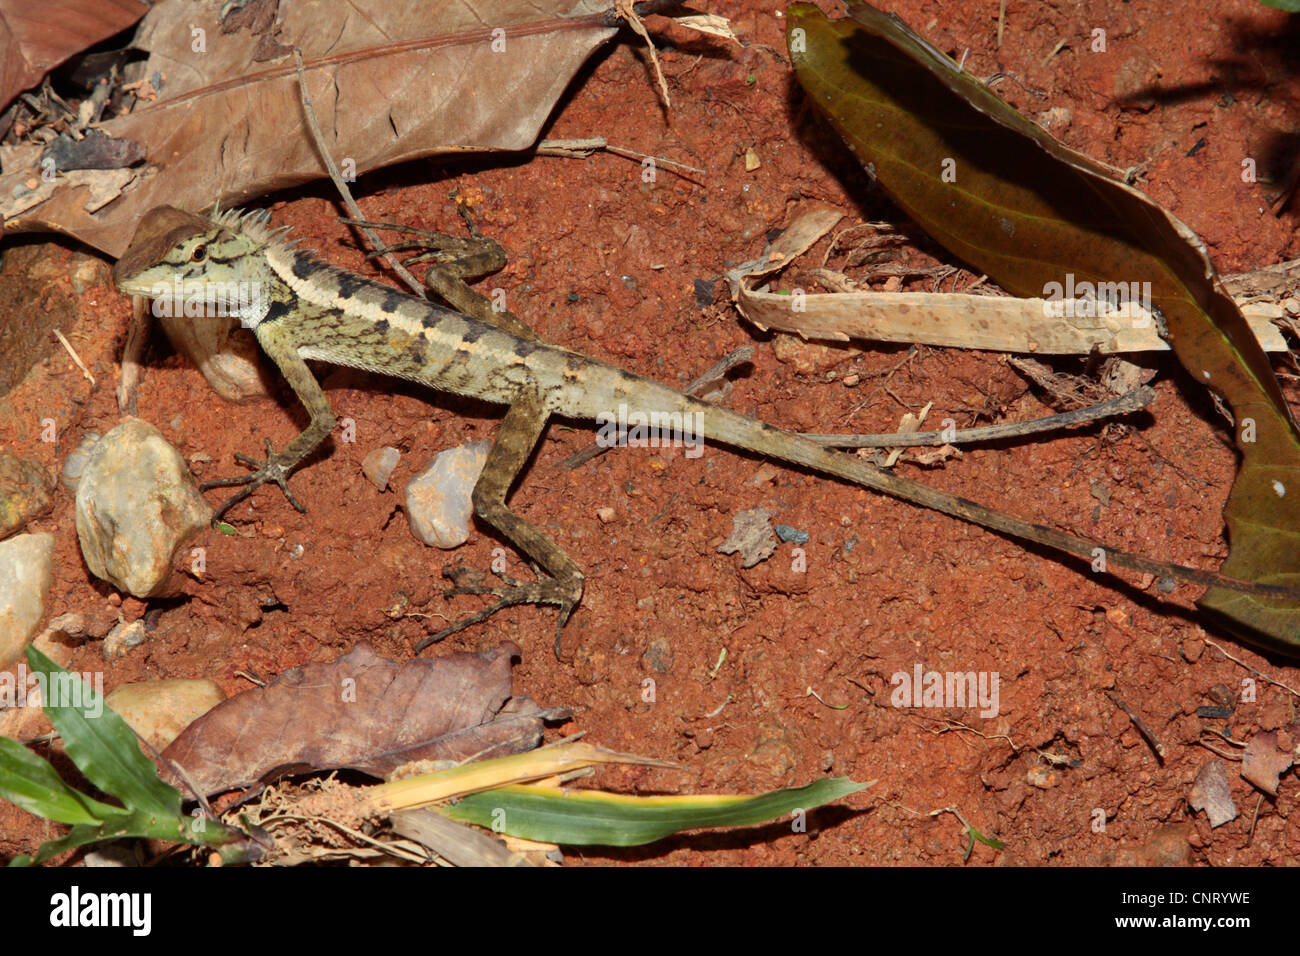 agamas, chisel-teeth lizards (Agamidae), on the ground, Thailand Stock Photo